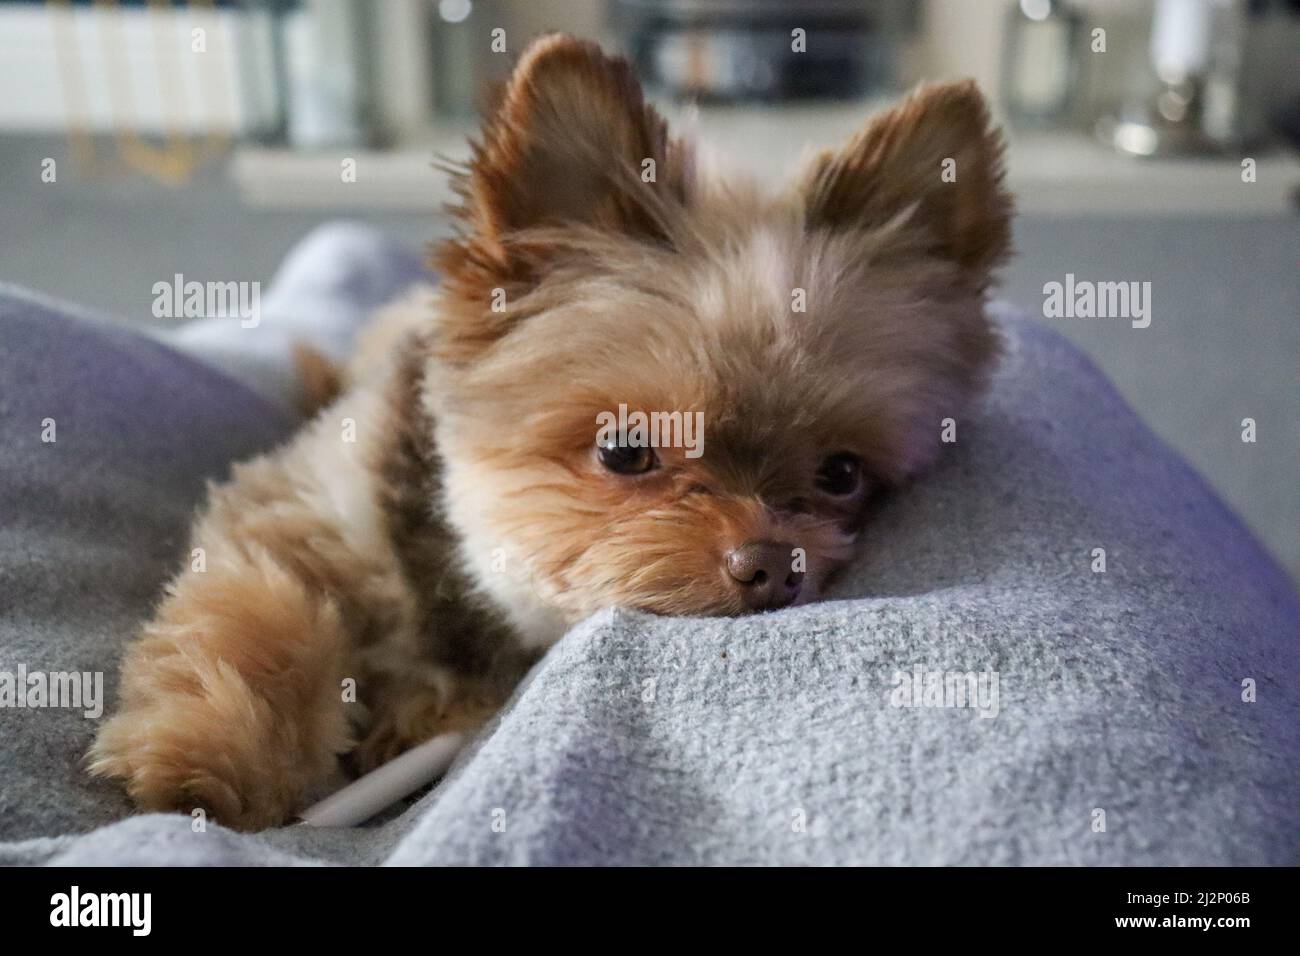 Kleine süße flauschige Schokolade Hund / Lapdog schluchzend auf einer Decke, mit Blick auf die Kamera Stockfoto